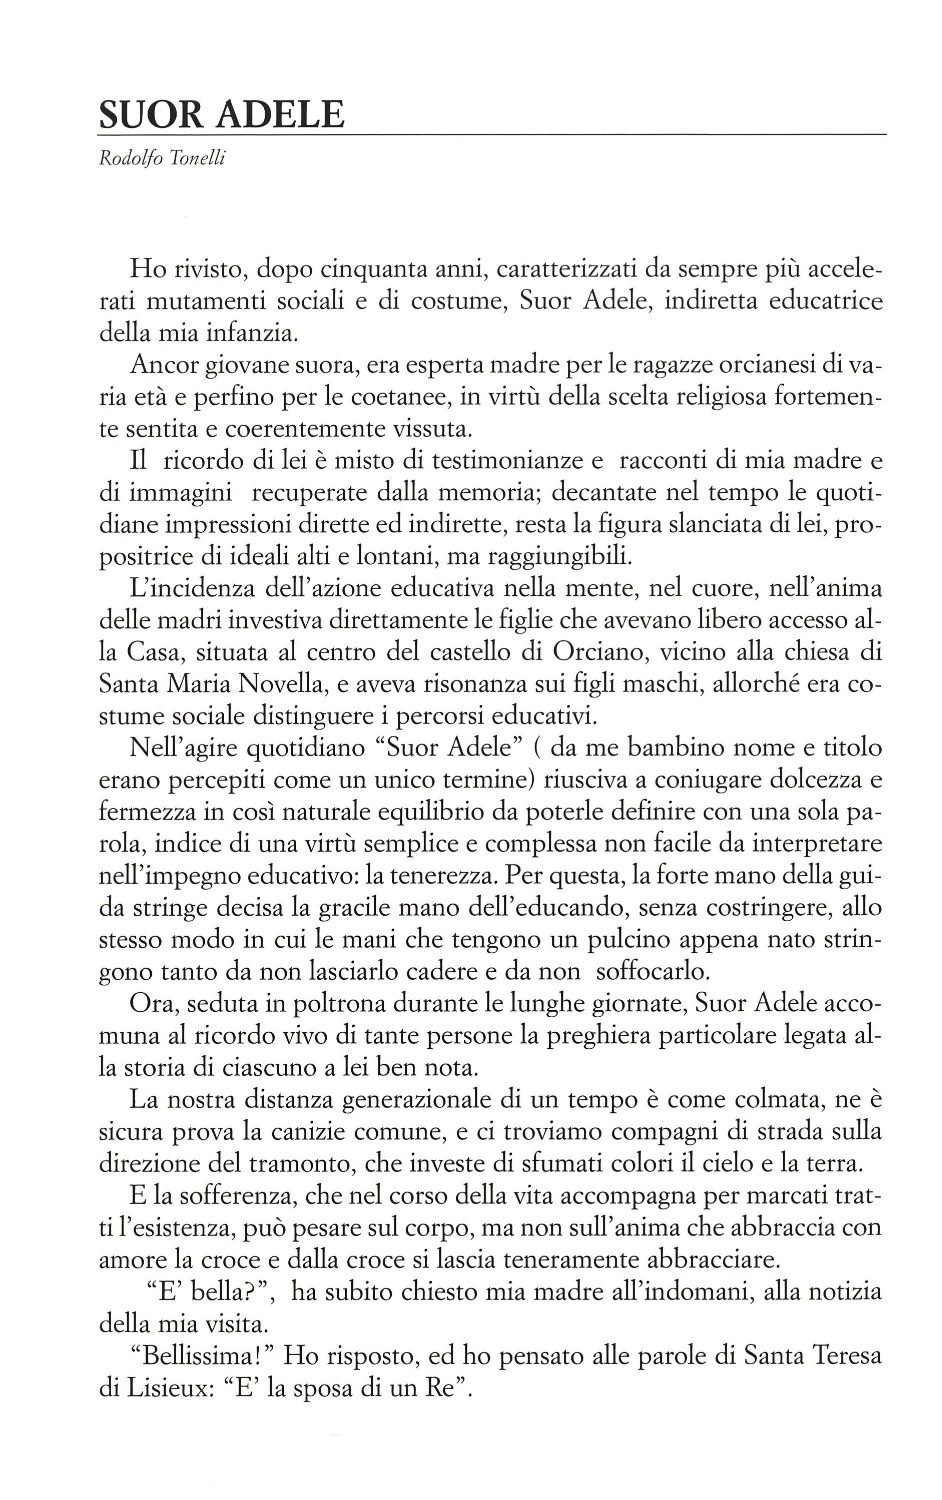 La torr i arduna tutti 2006 p.009